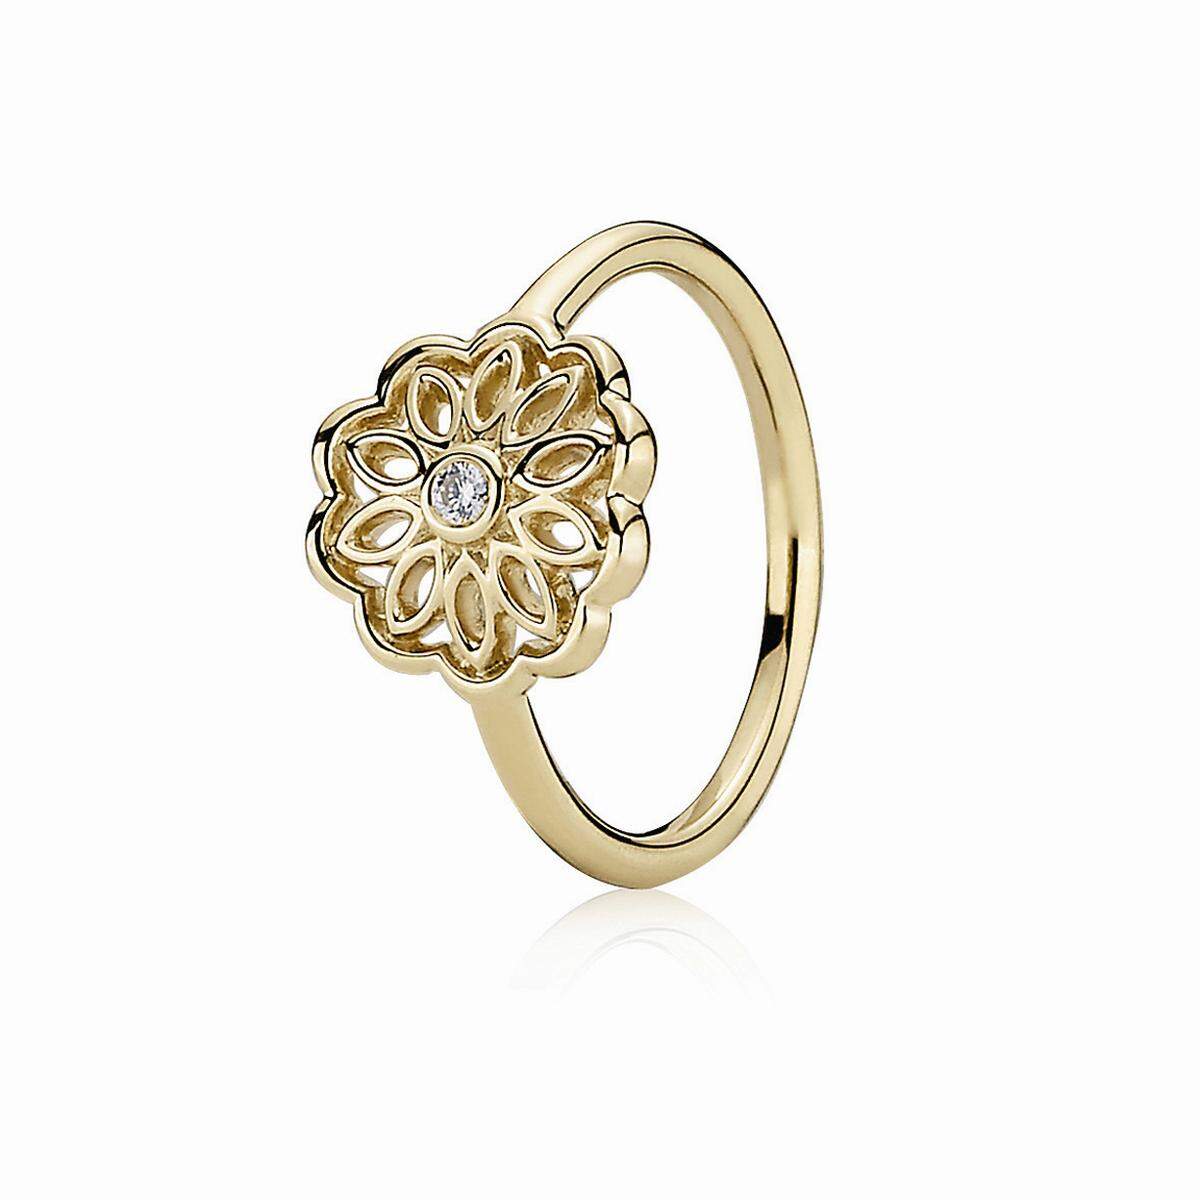 Goldener Ring mit Blütenmuster von Pandora um 599 Euro.